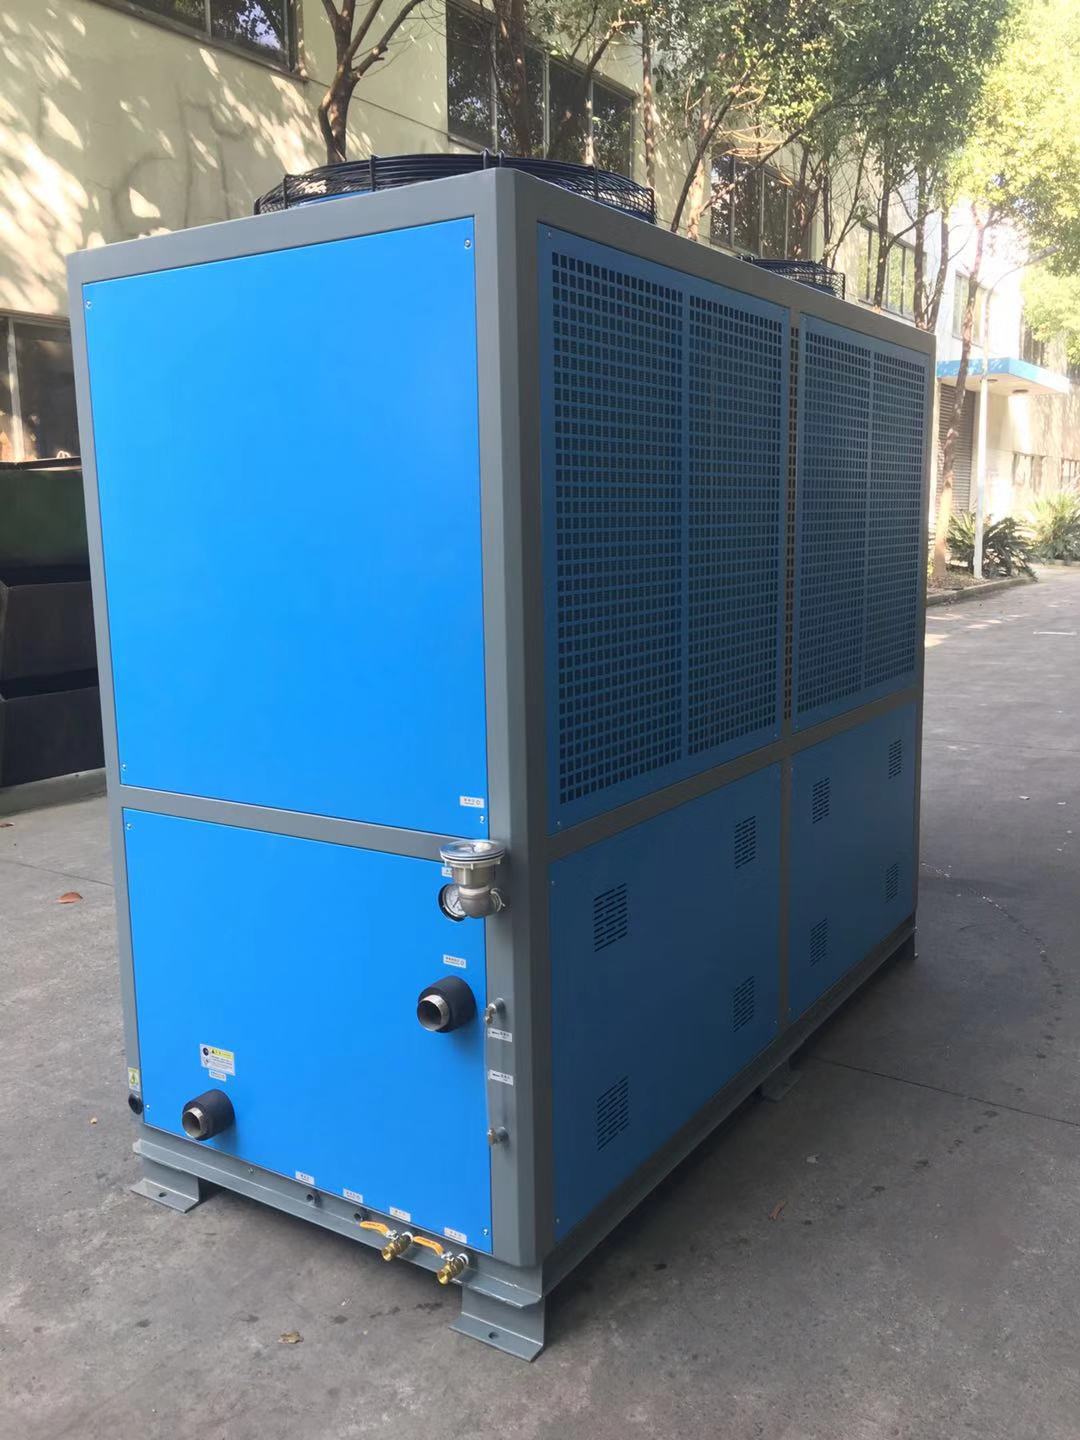 苏州冷水机组生产厂家 制冷设备 冷冻机组 冰水机厂家 工业冷冻机 冷水机组 德玛克冷暖设备生产厂家